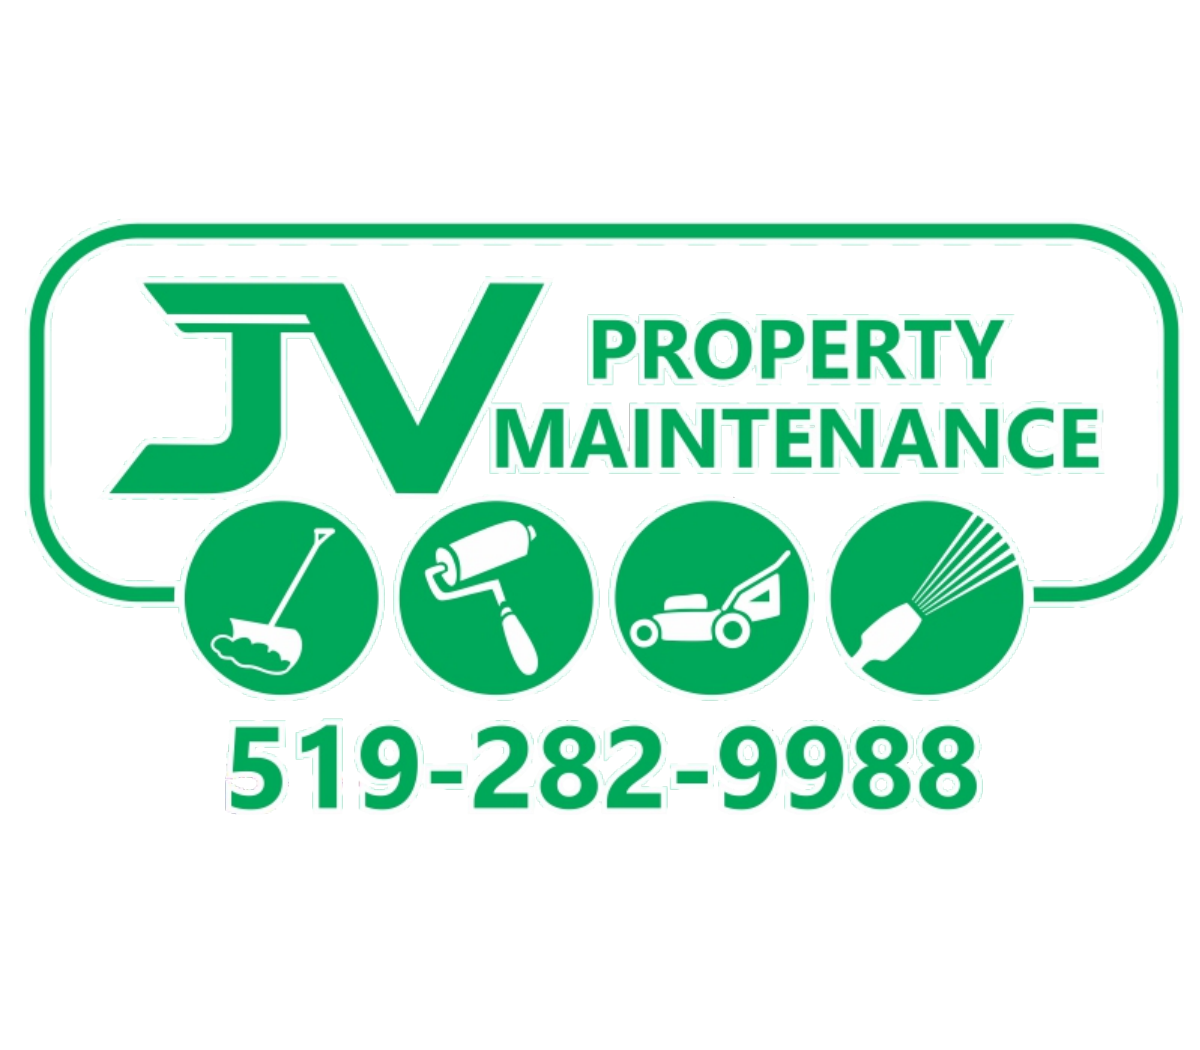 JV Property Maintenance Logo